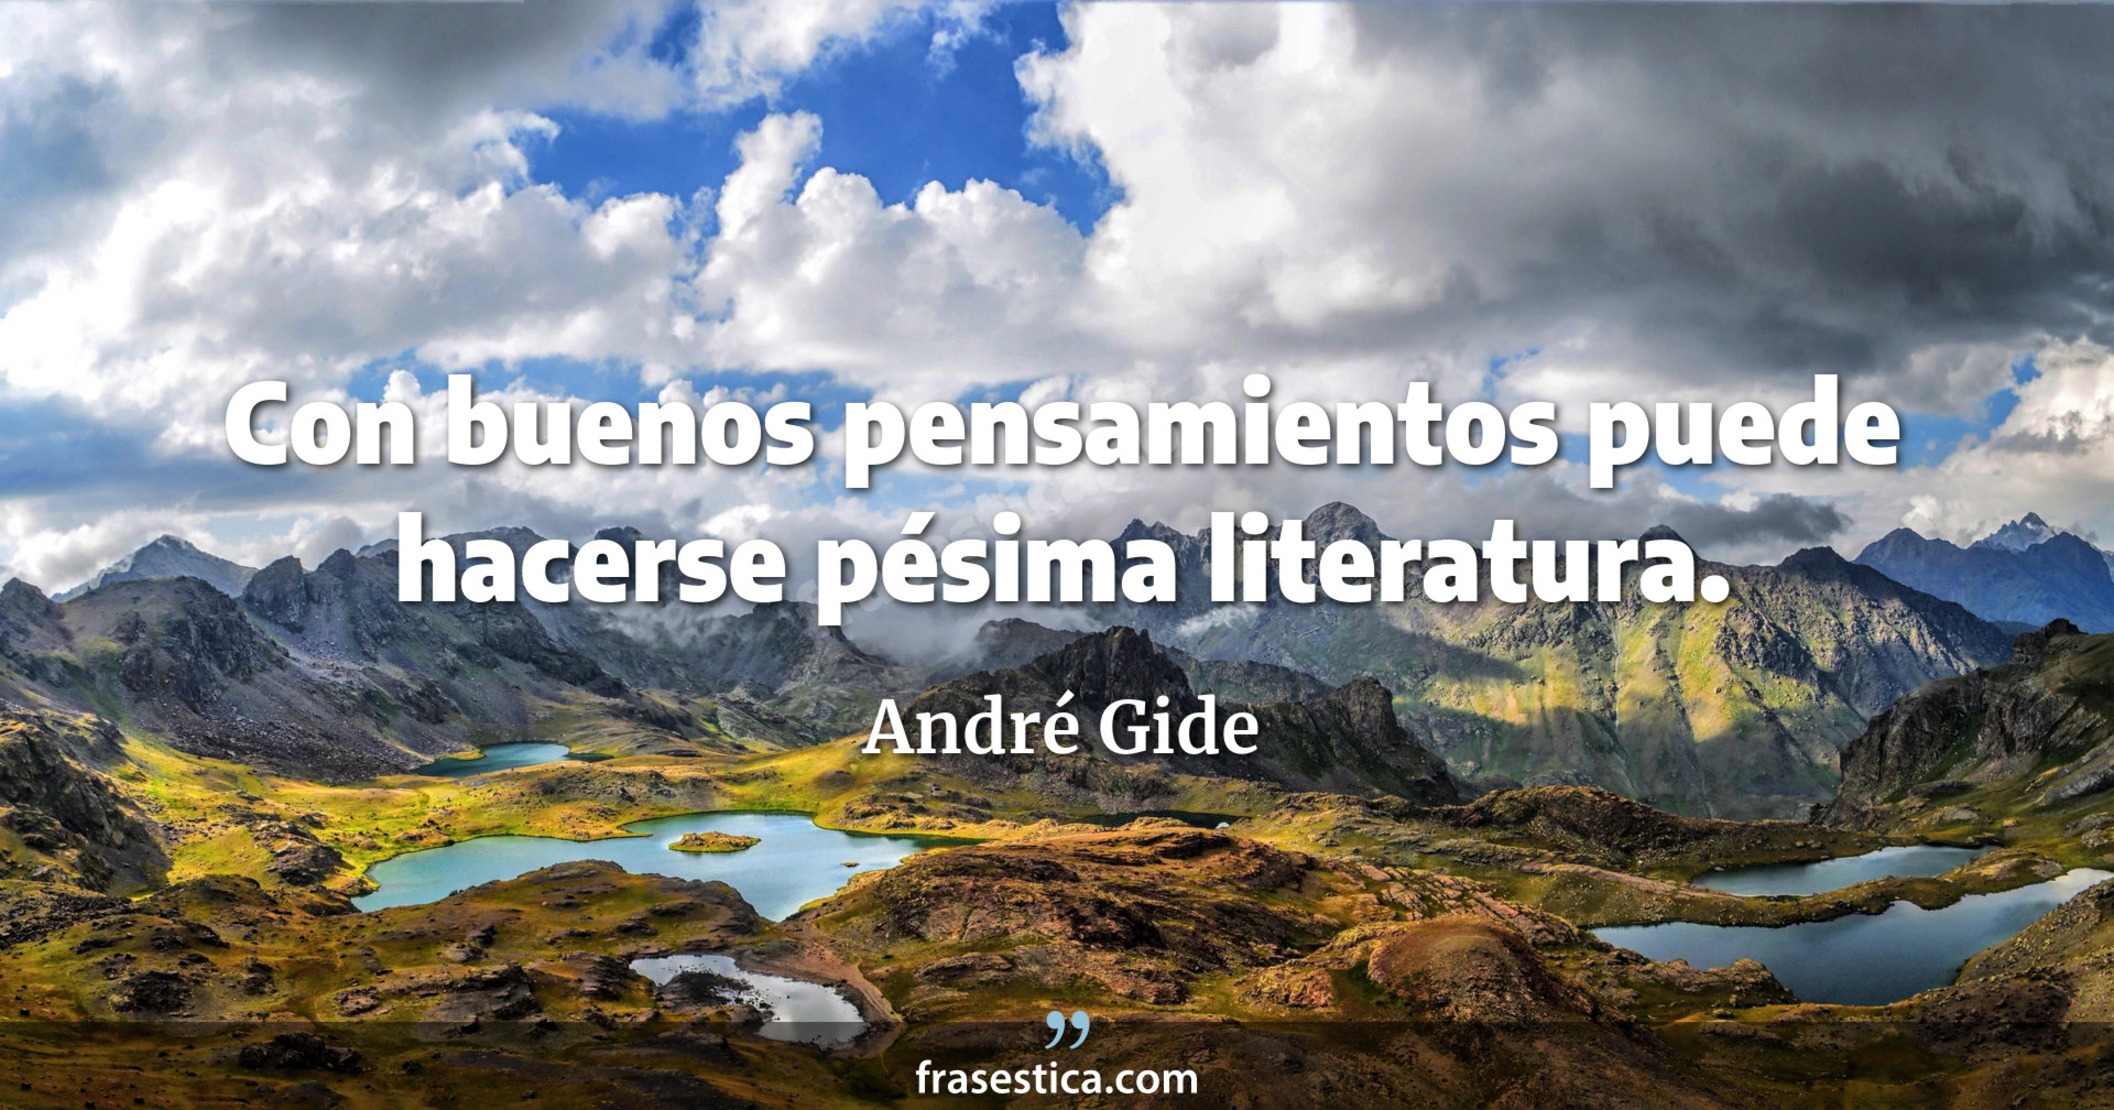 Con buenos pensamientos puede hacerse pésima literatura. - André Gide